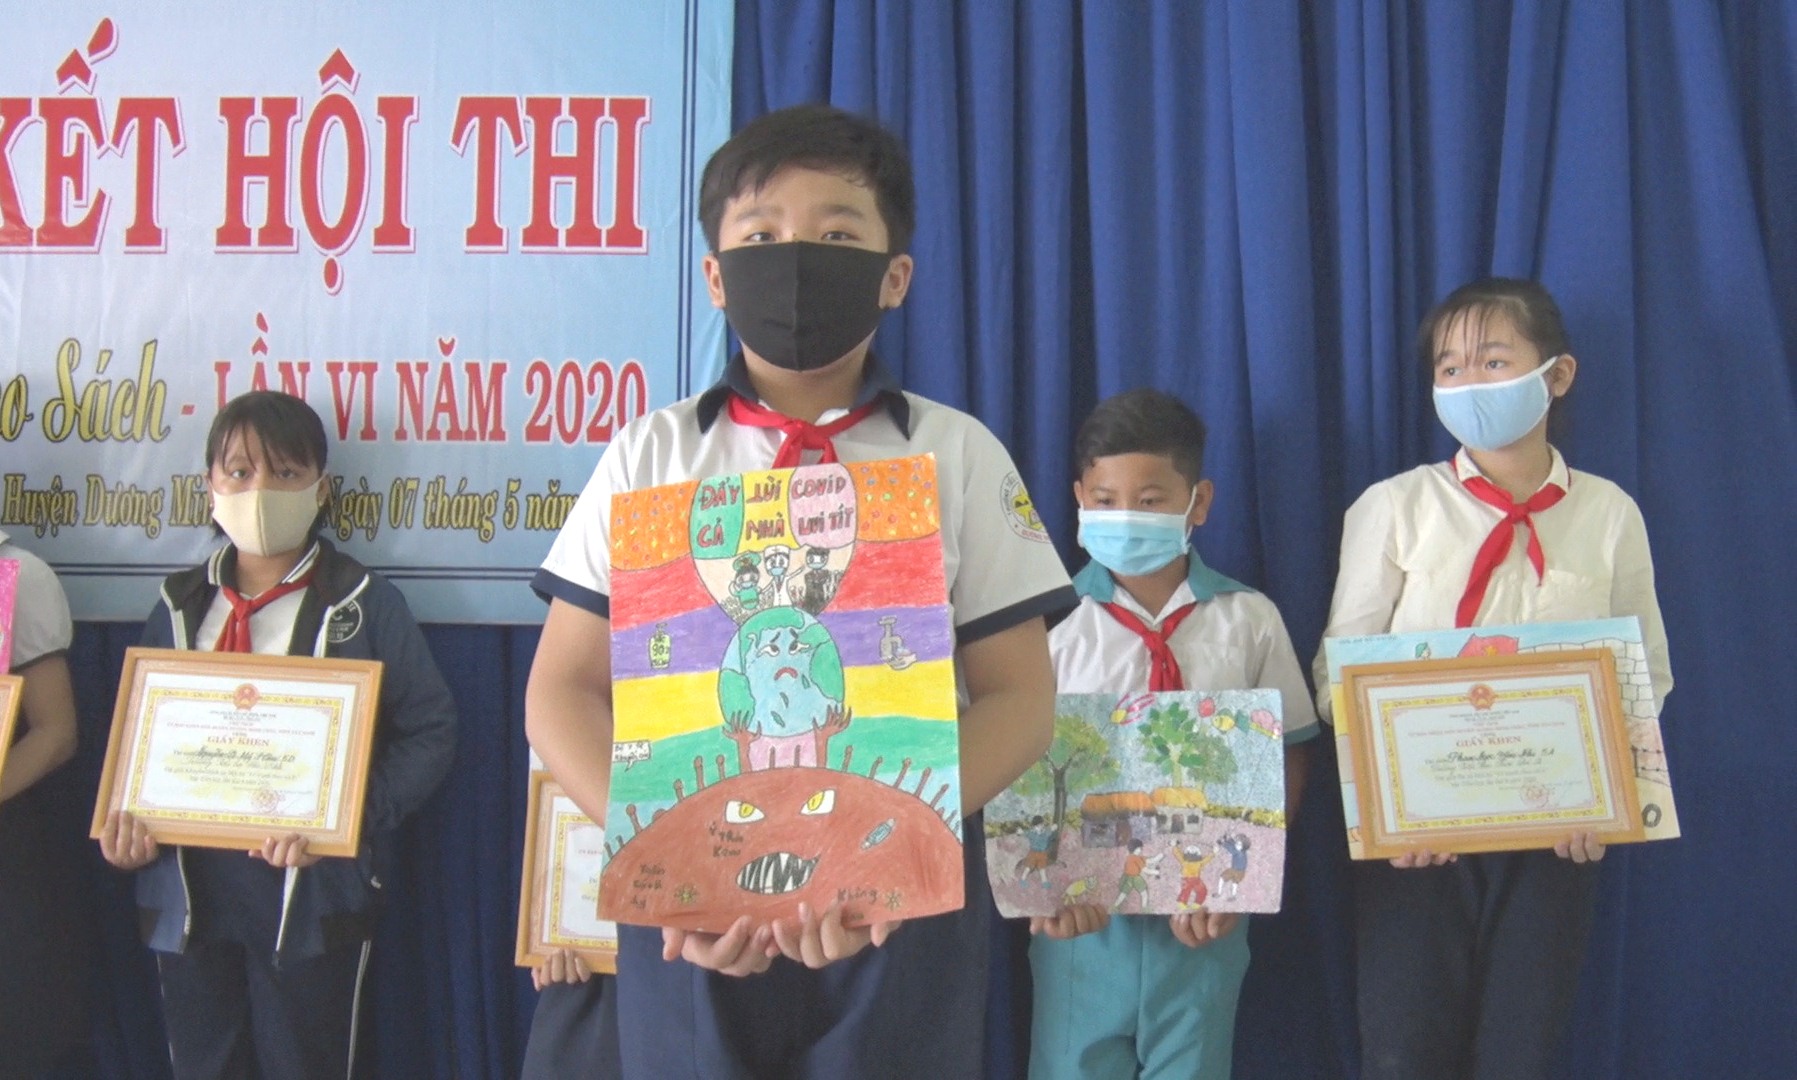 Dương Minh Châu Trao Giải Hội Thi Vẽ Tranh Theo Sách Lần 6 Năm 2020 - Báo  Tây Ninh Online